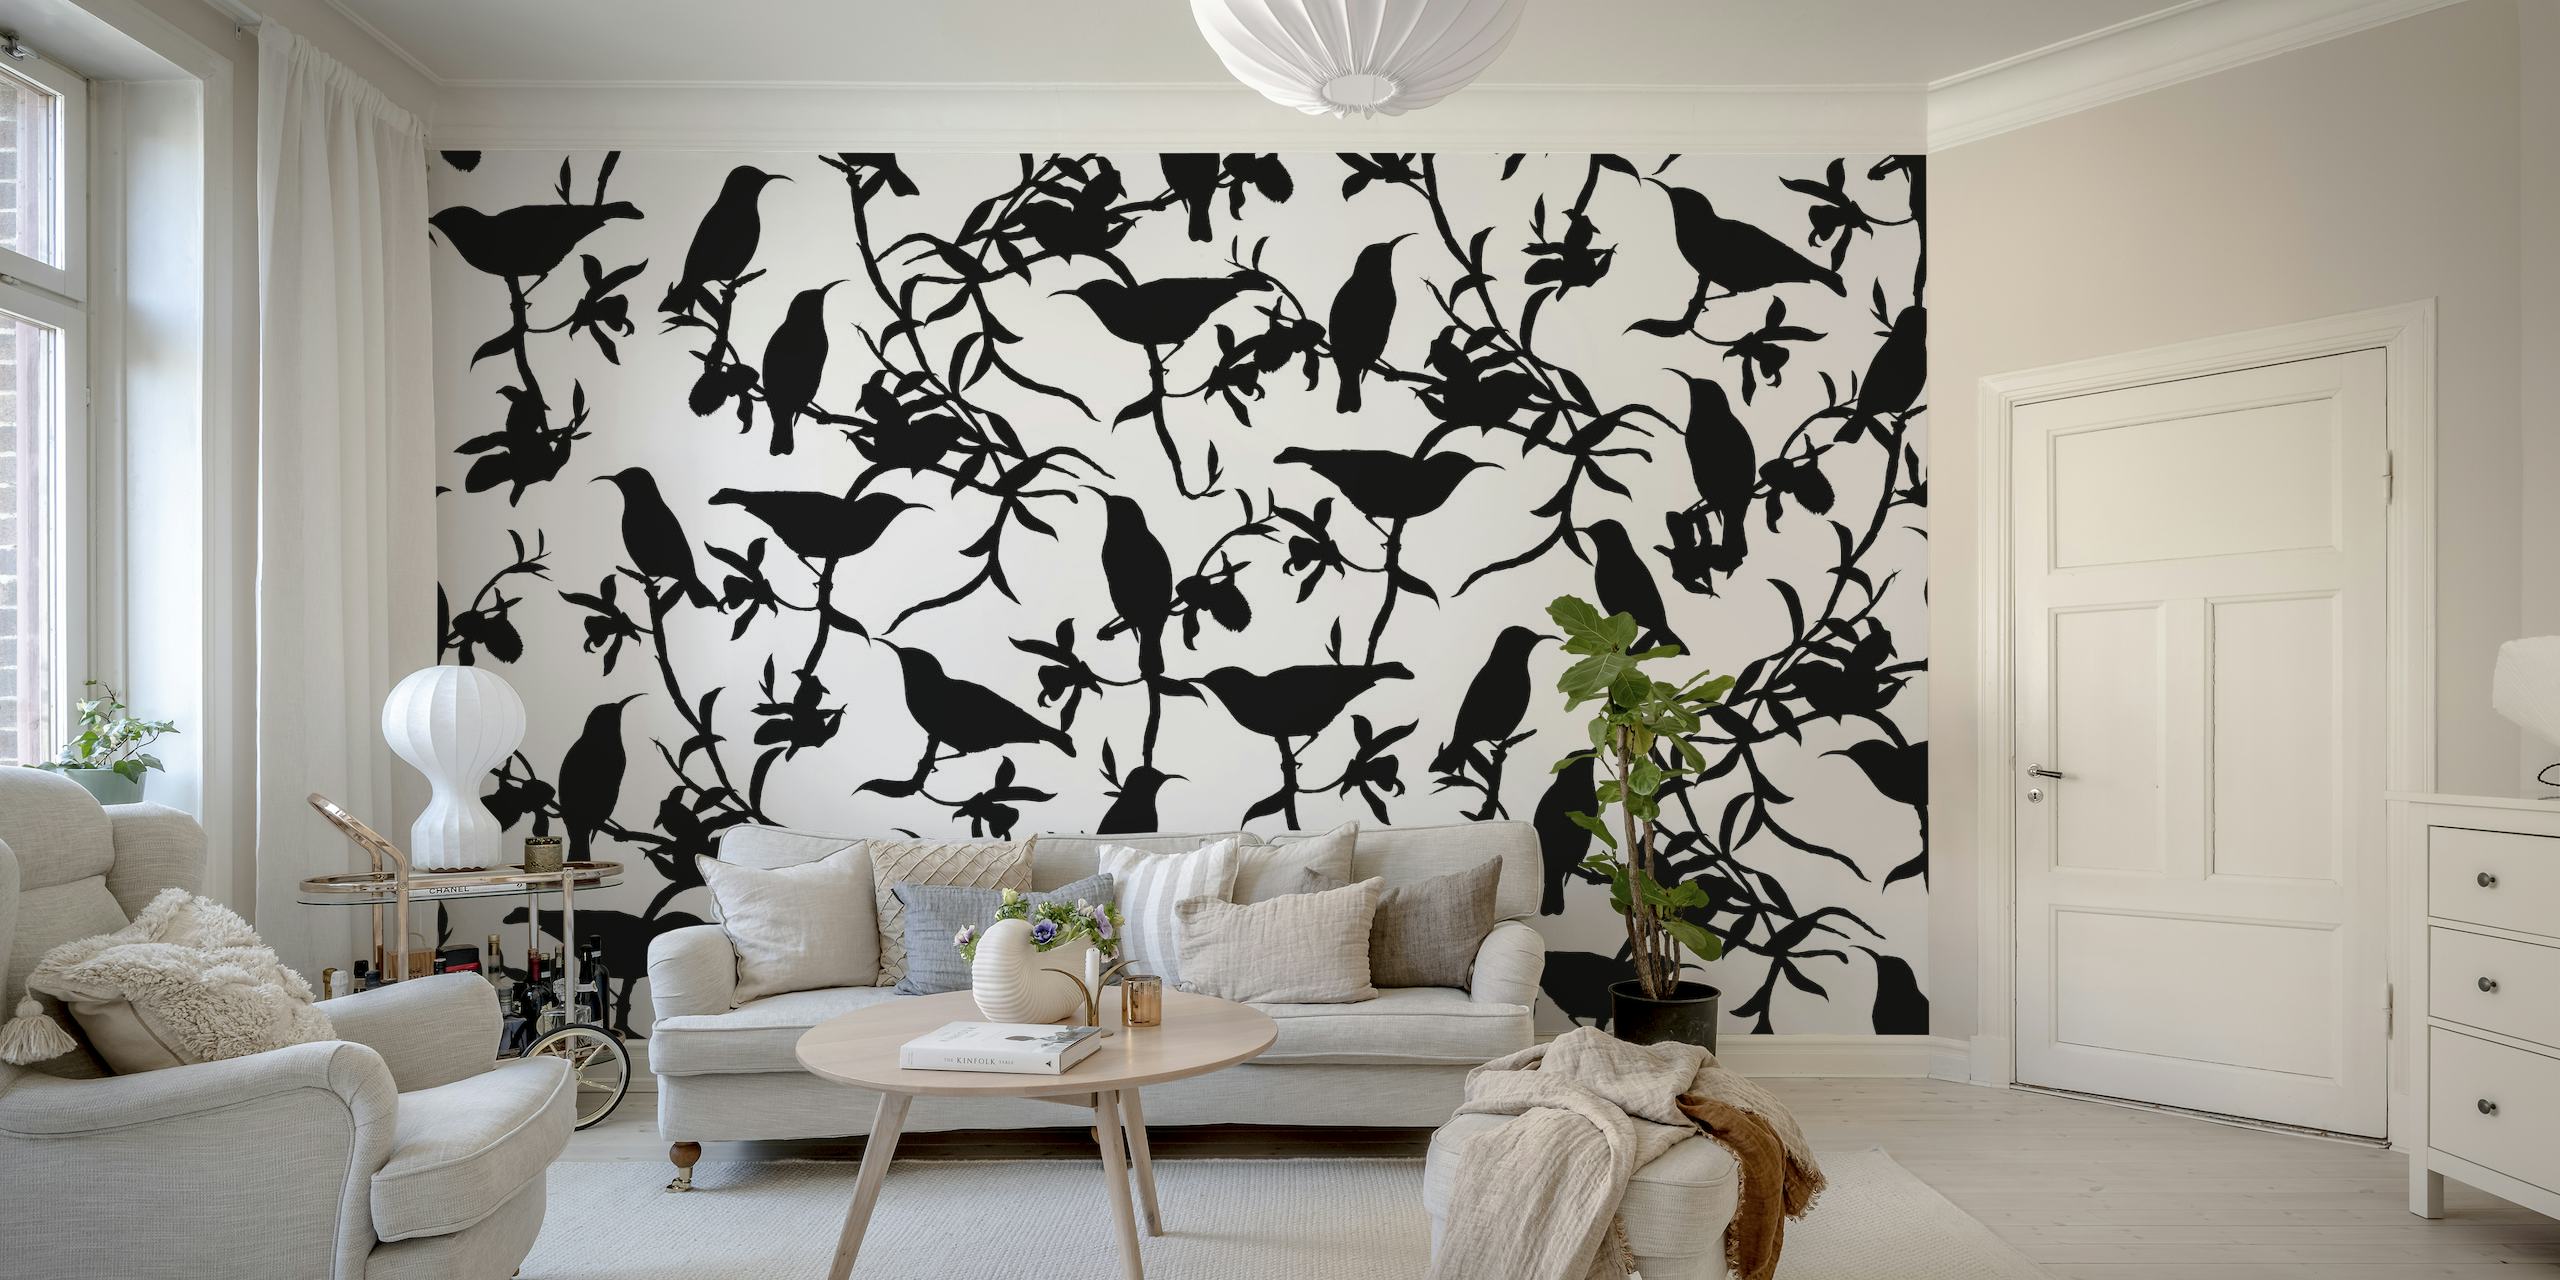 Fotomural vinílico de parede com padrão chinoiserie de beija-flor preto e branco na Happywall